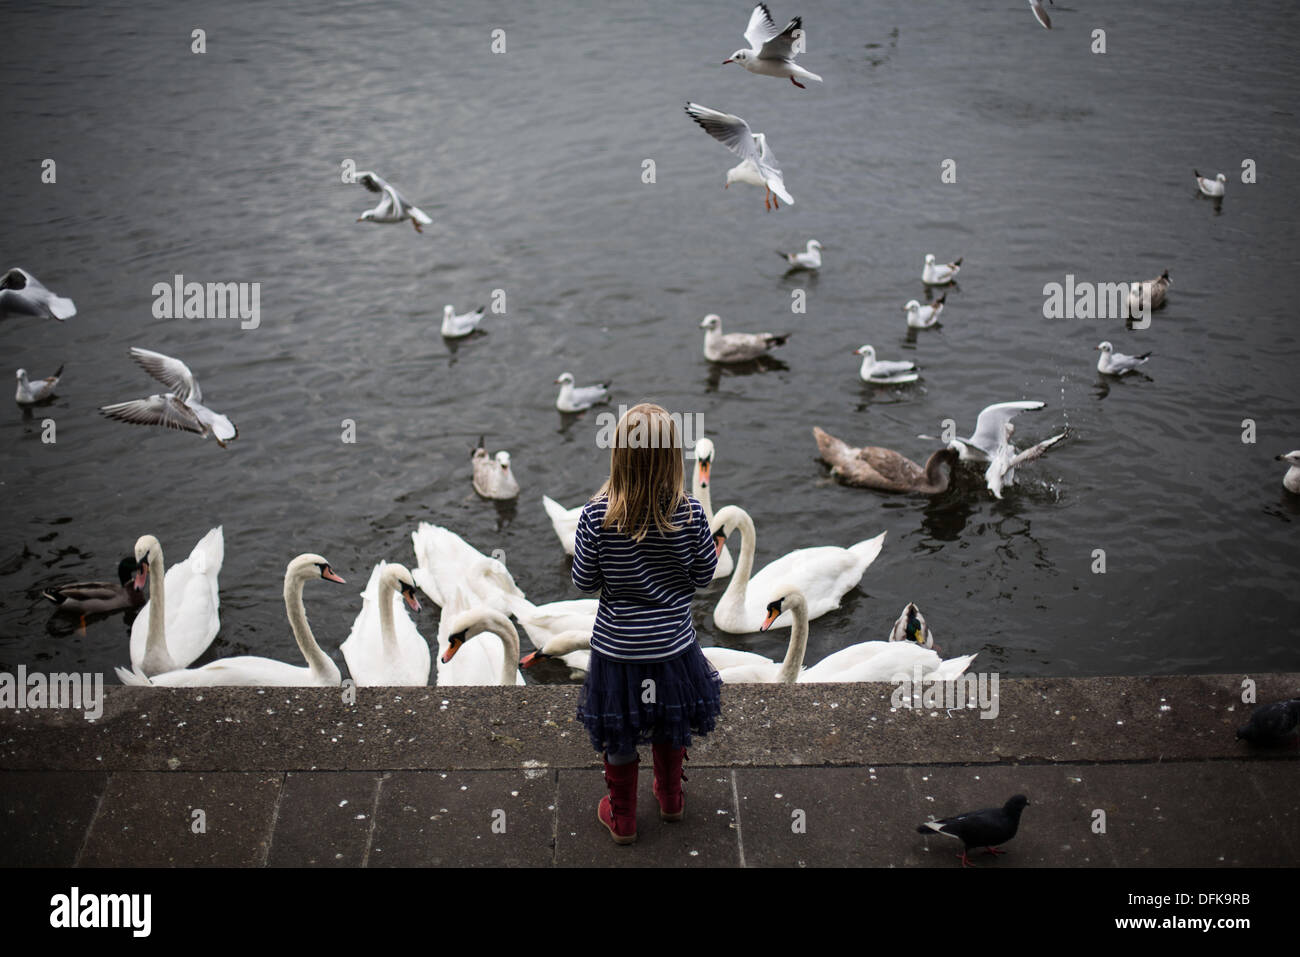 Amburgo, Germania. 06 ott 2013. Una ragazza alimenta i gabbiani e cigni sulle rive del fiume Alster ad Amburgo, Germania, 06 ottobre 2013. Foto: MARIA HITIJ/dpa/Alamy Live News Foto Stock